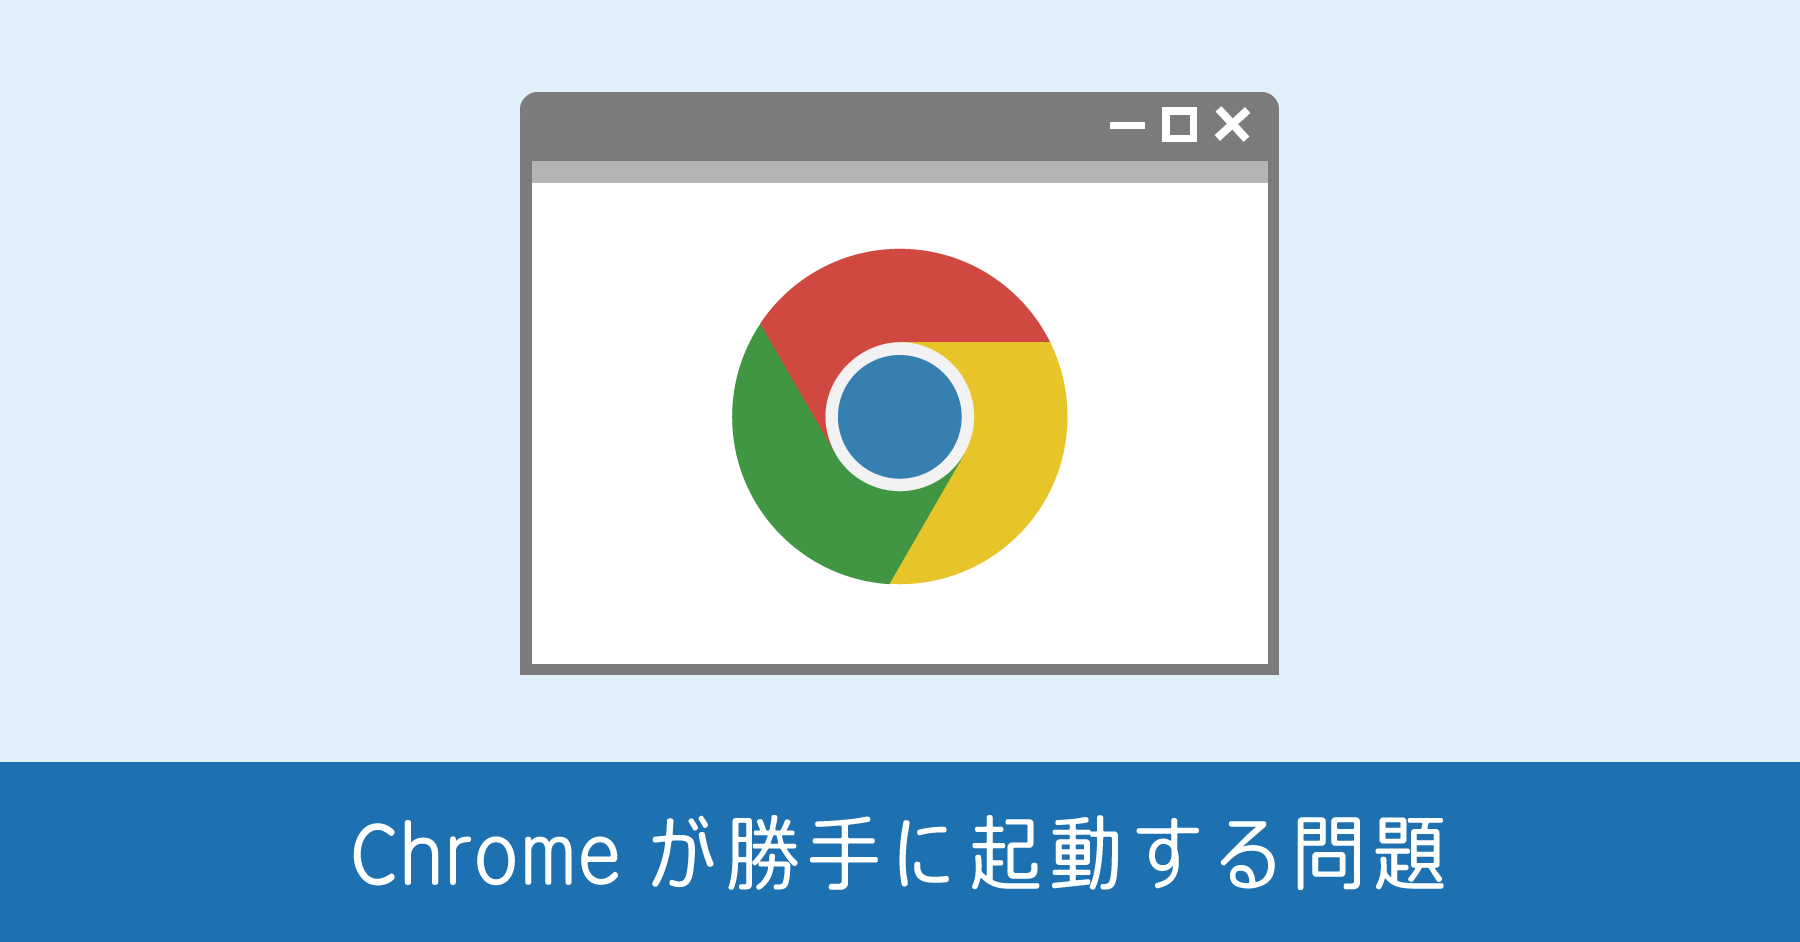 起動時に Chrome が勝手に起動する原因は Windows 10 の仕様変更によるもの